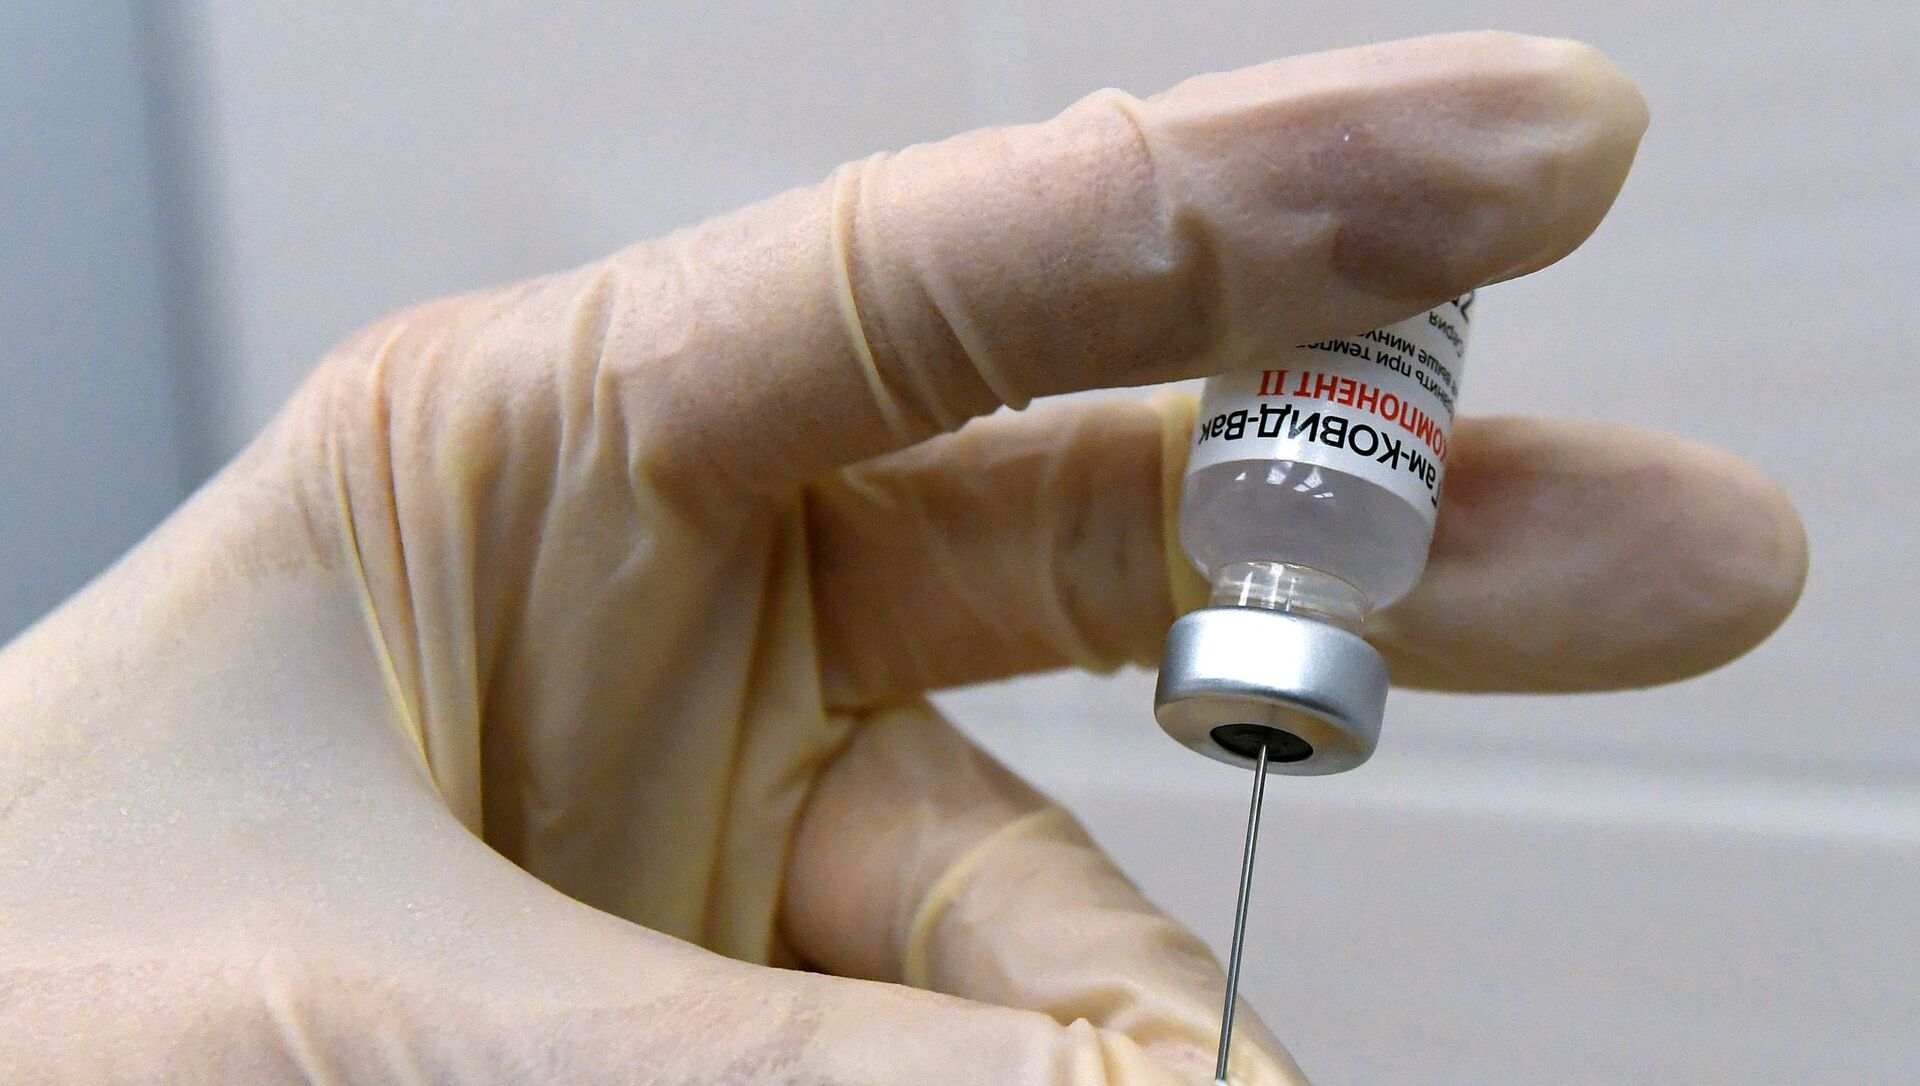 Медсестра набирает в шприц вакцину против COVID-19 Спутник V (Гам-КОВИД-Вак) - Sputnik Lietuva, 1920, 01.03.2021